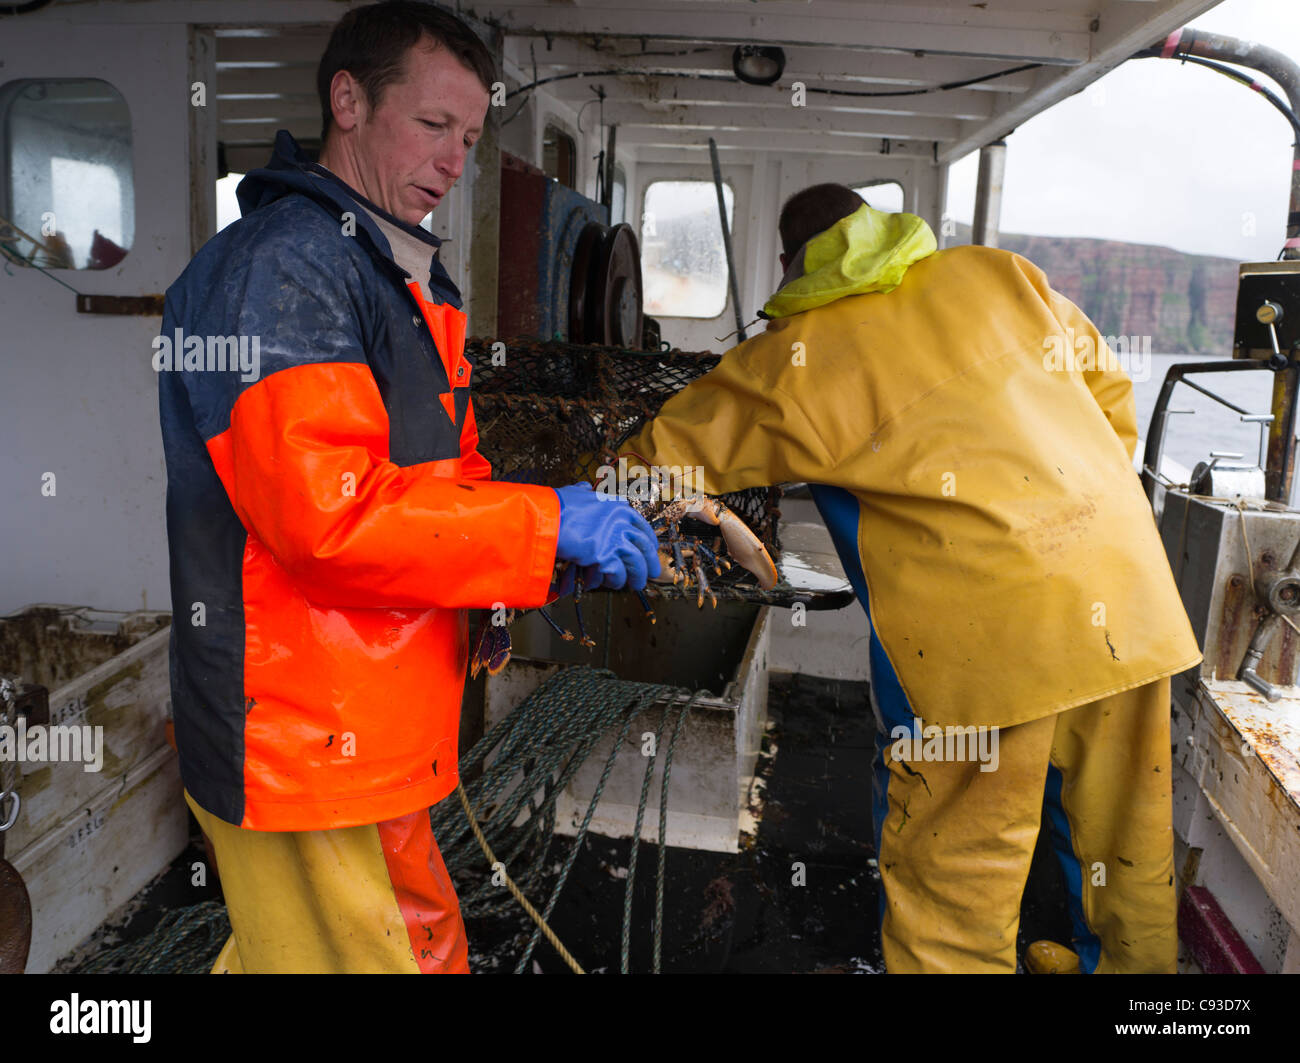 dh pêcheurs pêche au homard ORKNEY Creel à bord d'un bateau de pêche ecosse homme frais pot pêcheur homards poissons Banque D'Images